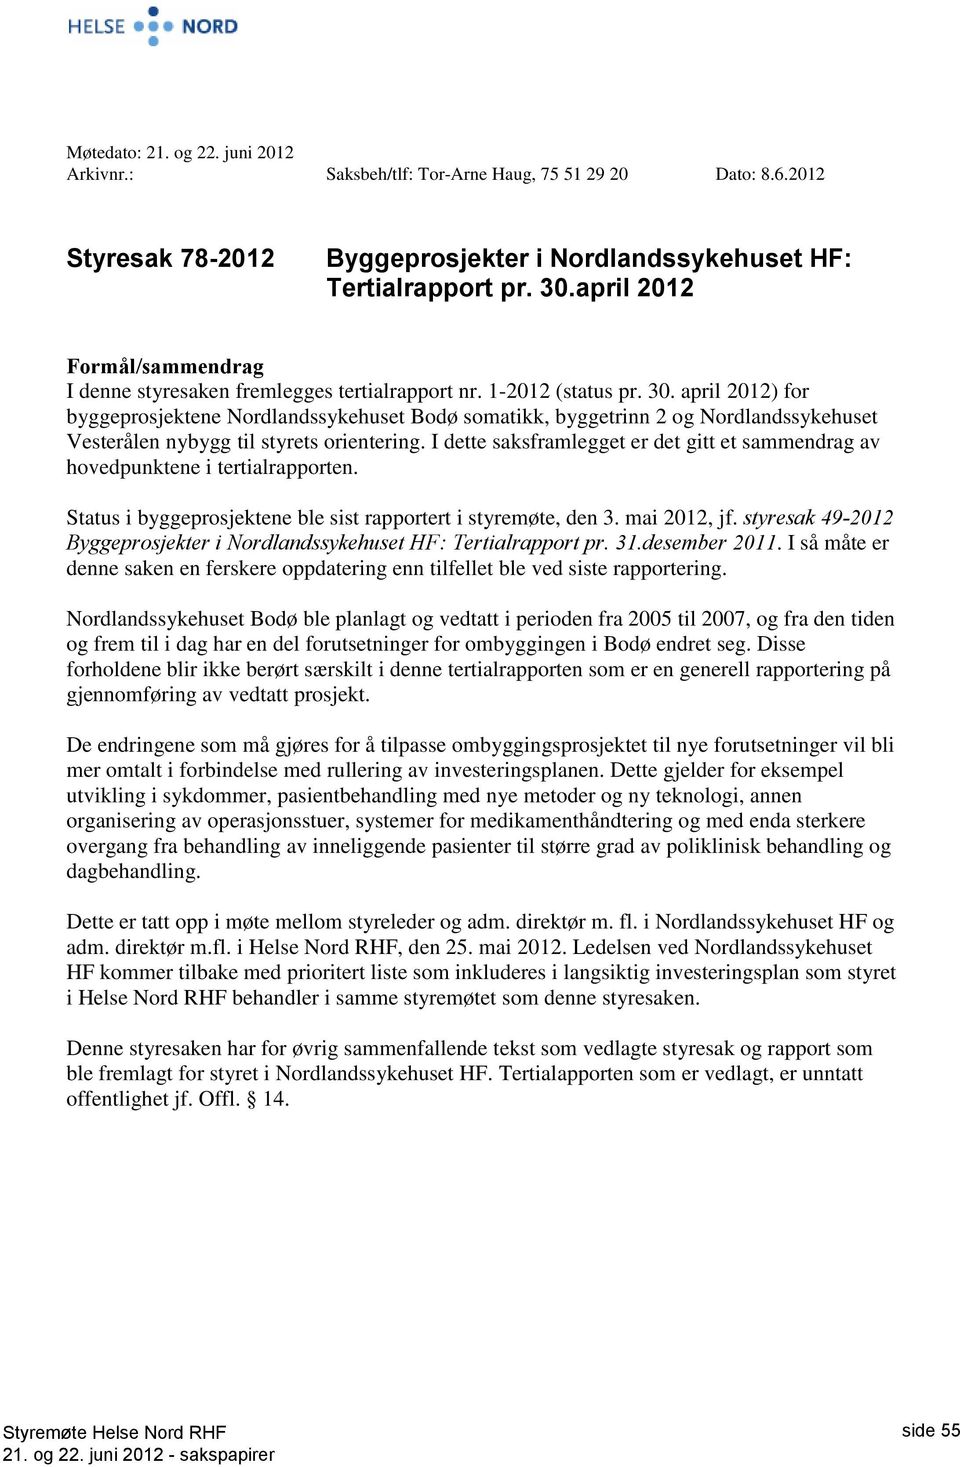 april 2012) for byggeprosjektene Nordlandssykehuset Bodø somatikk, byggetrinn 2 og Nordlandssykehuset Vesterålen nybygg til styrets orientering.